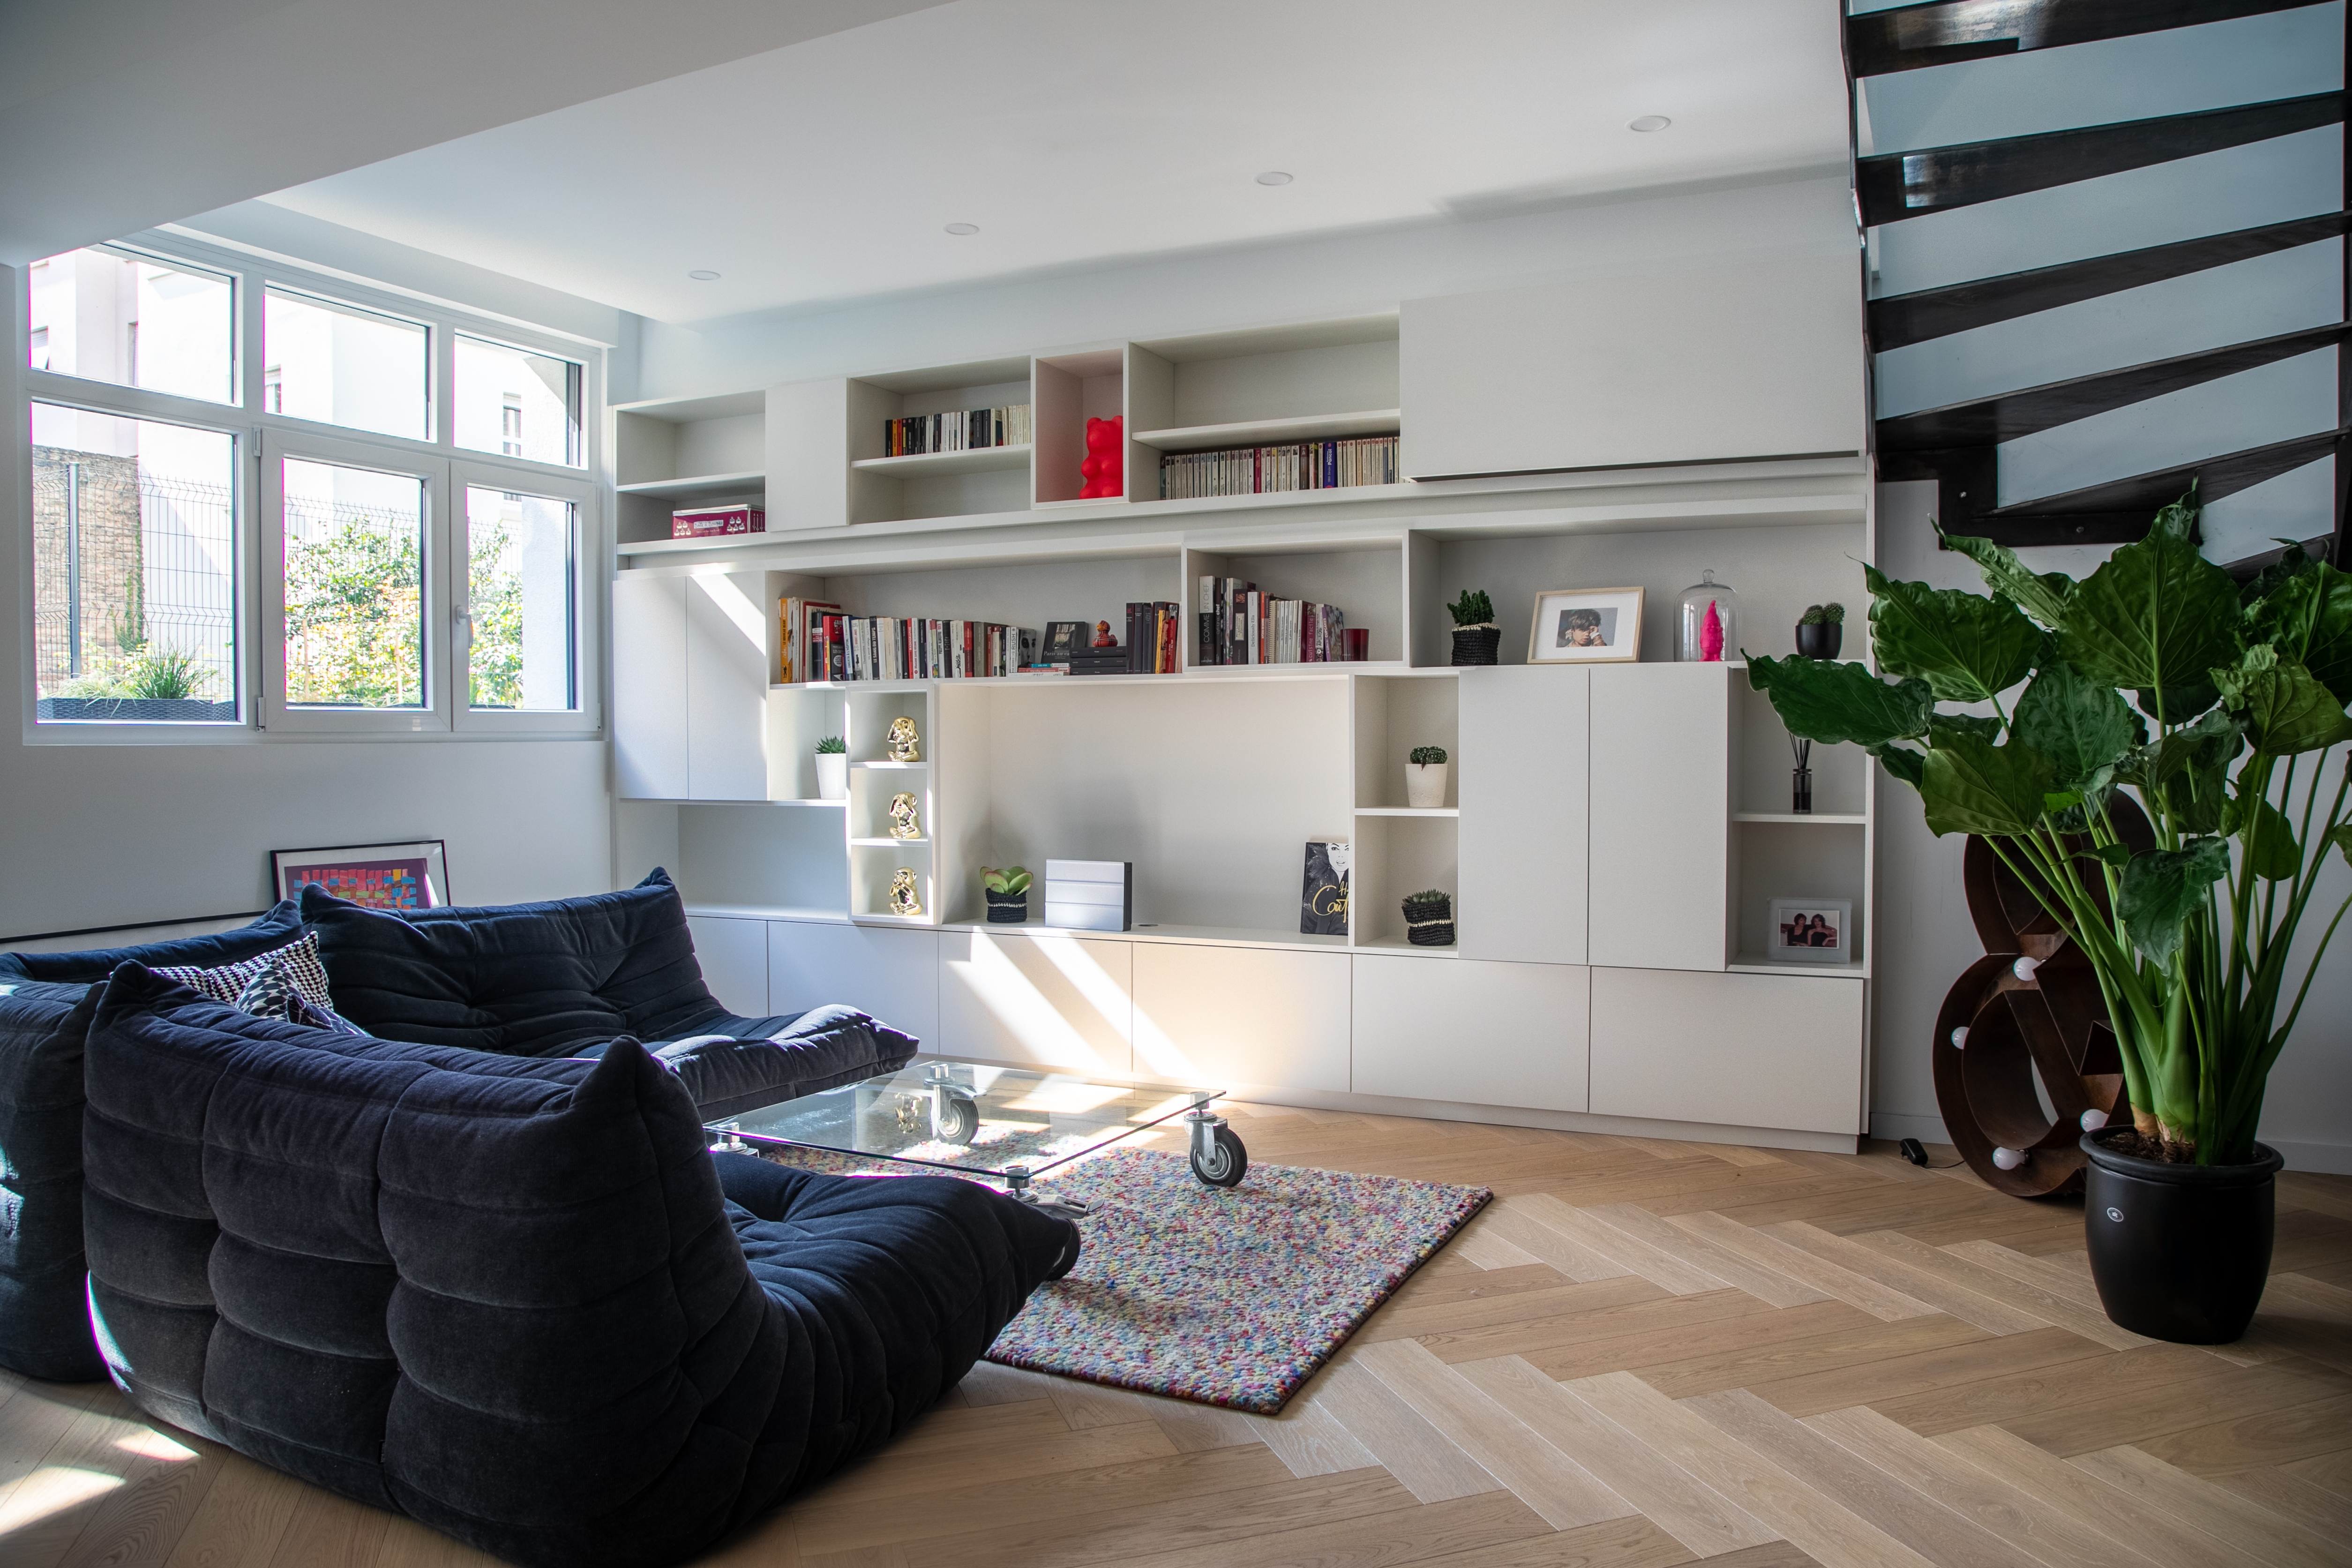 Photographie d’un projet de réaménagement complet d’un appartement duplex par Manuel Grimm